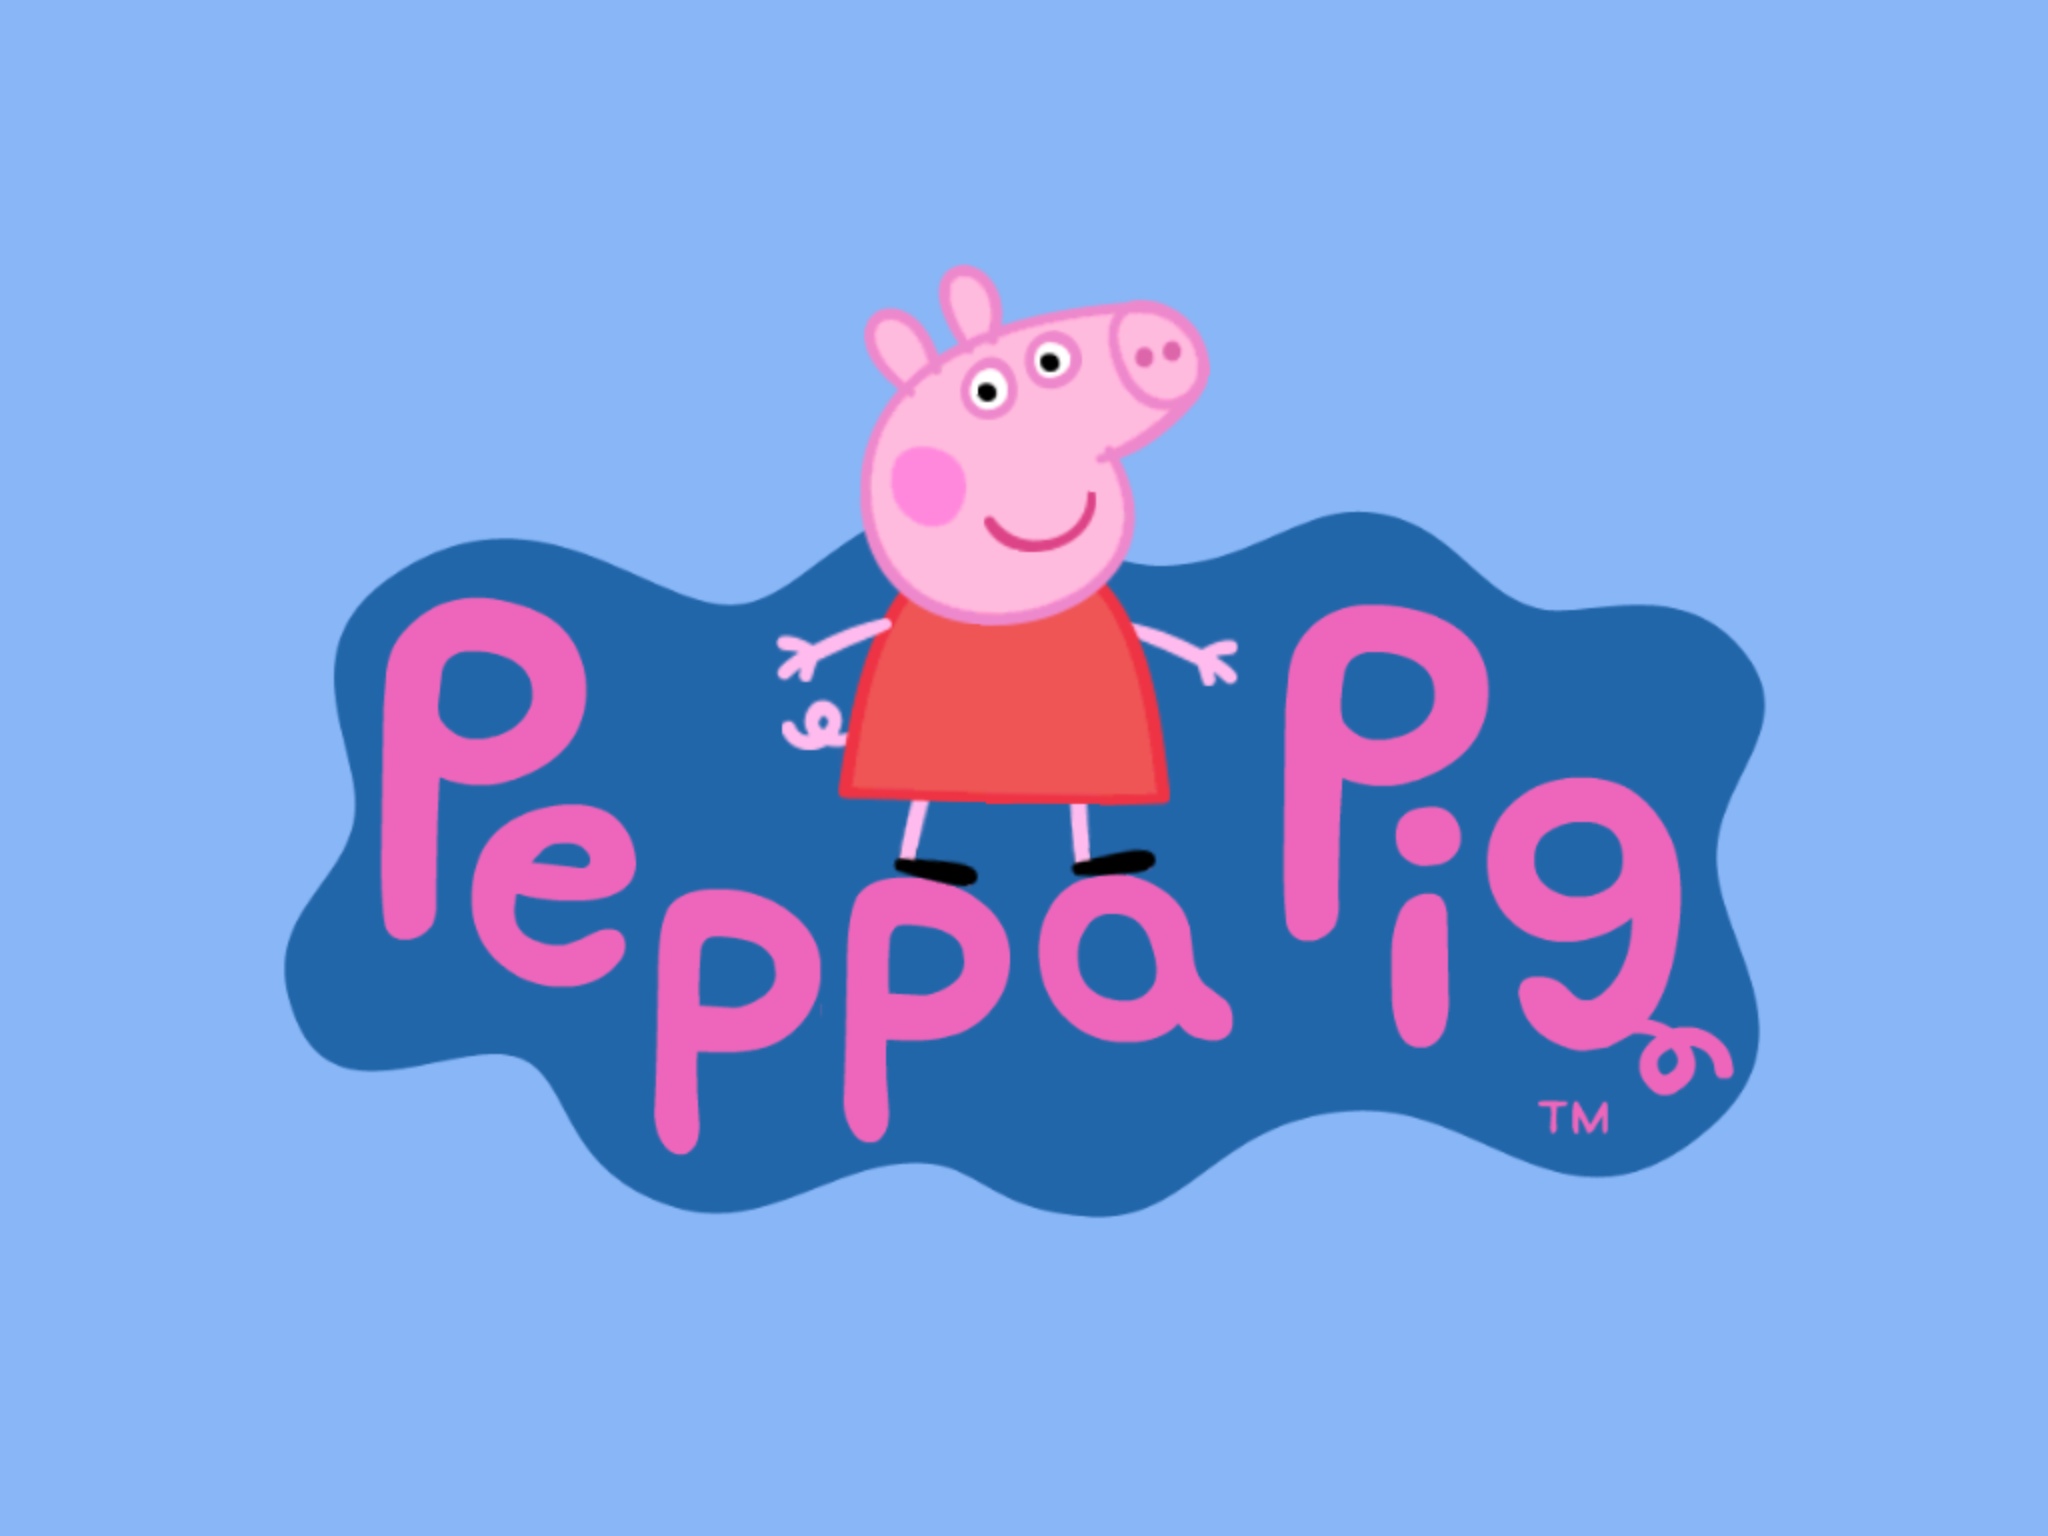 Peppa Pig HD Wallpaper on WallpaperSafari